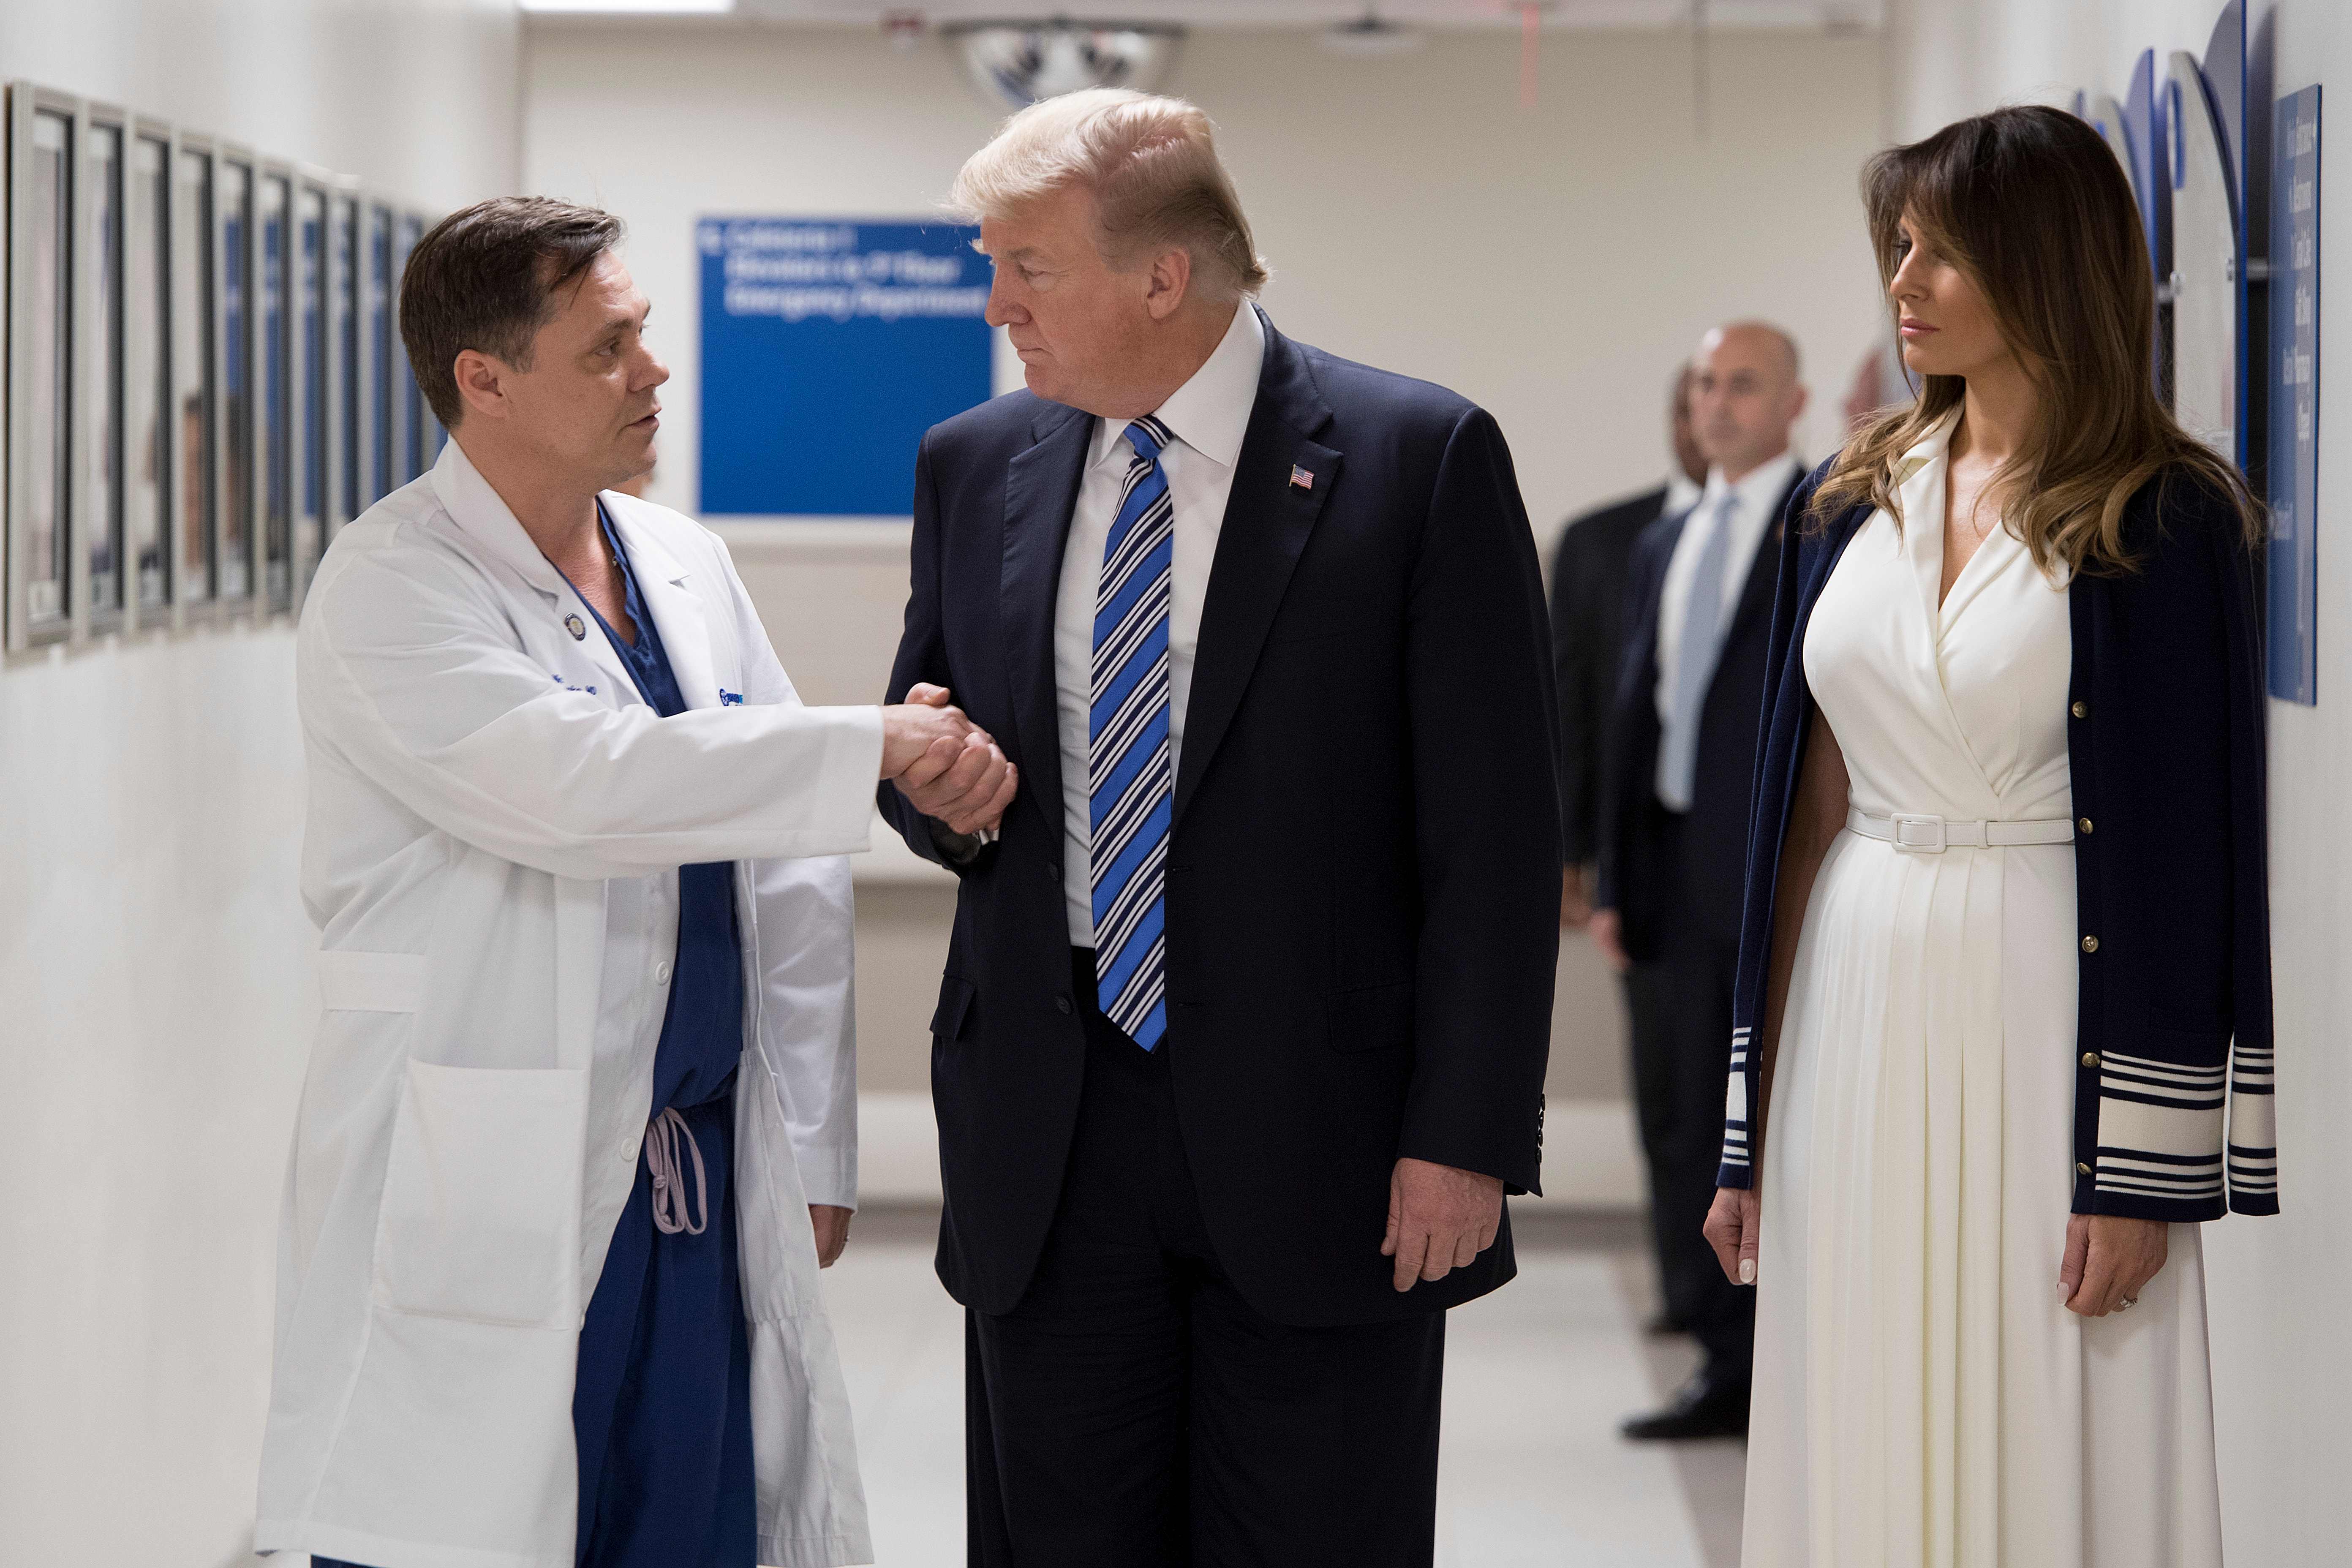 ترامب يصافح أحد الأطباء داخل المستشفى